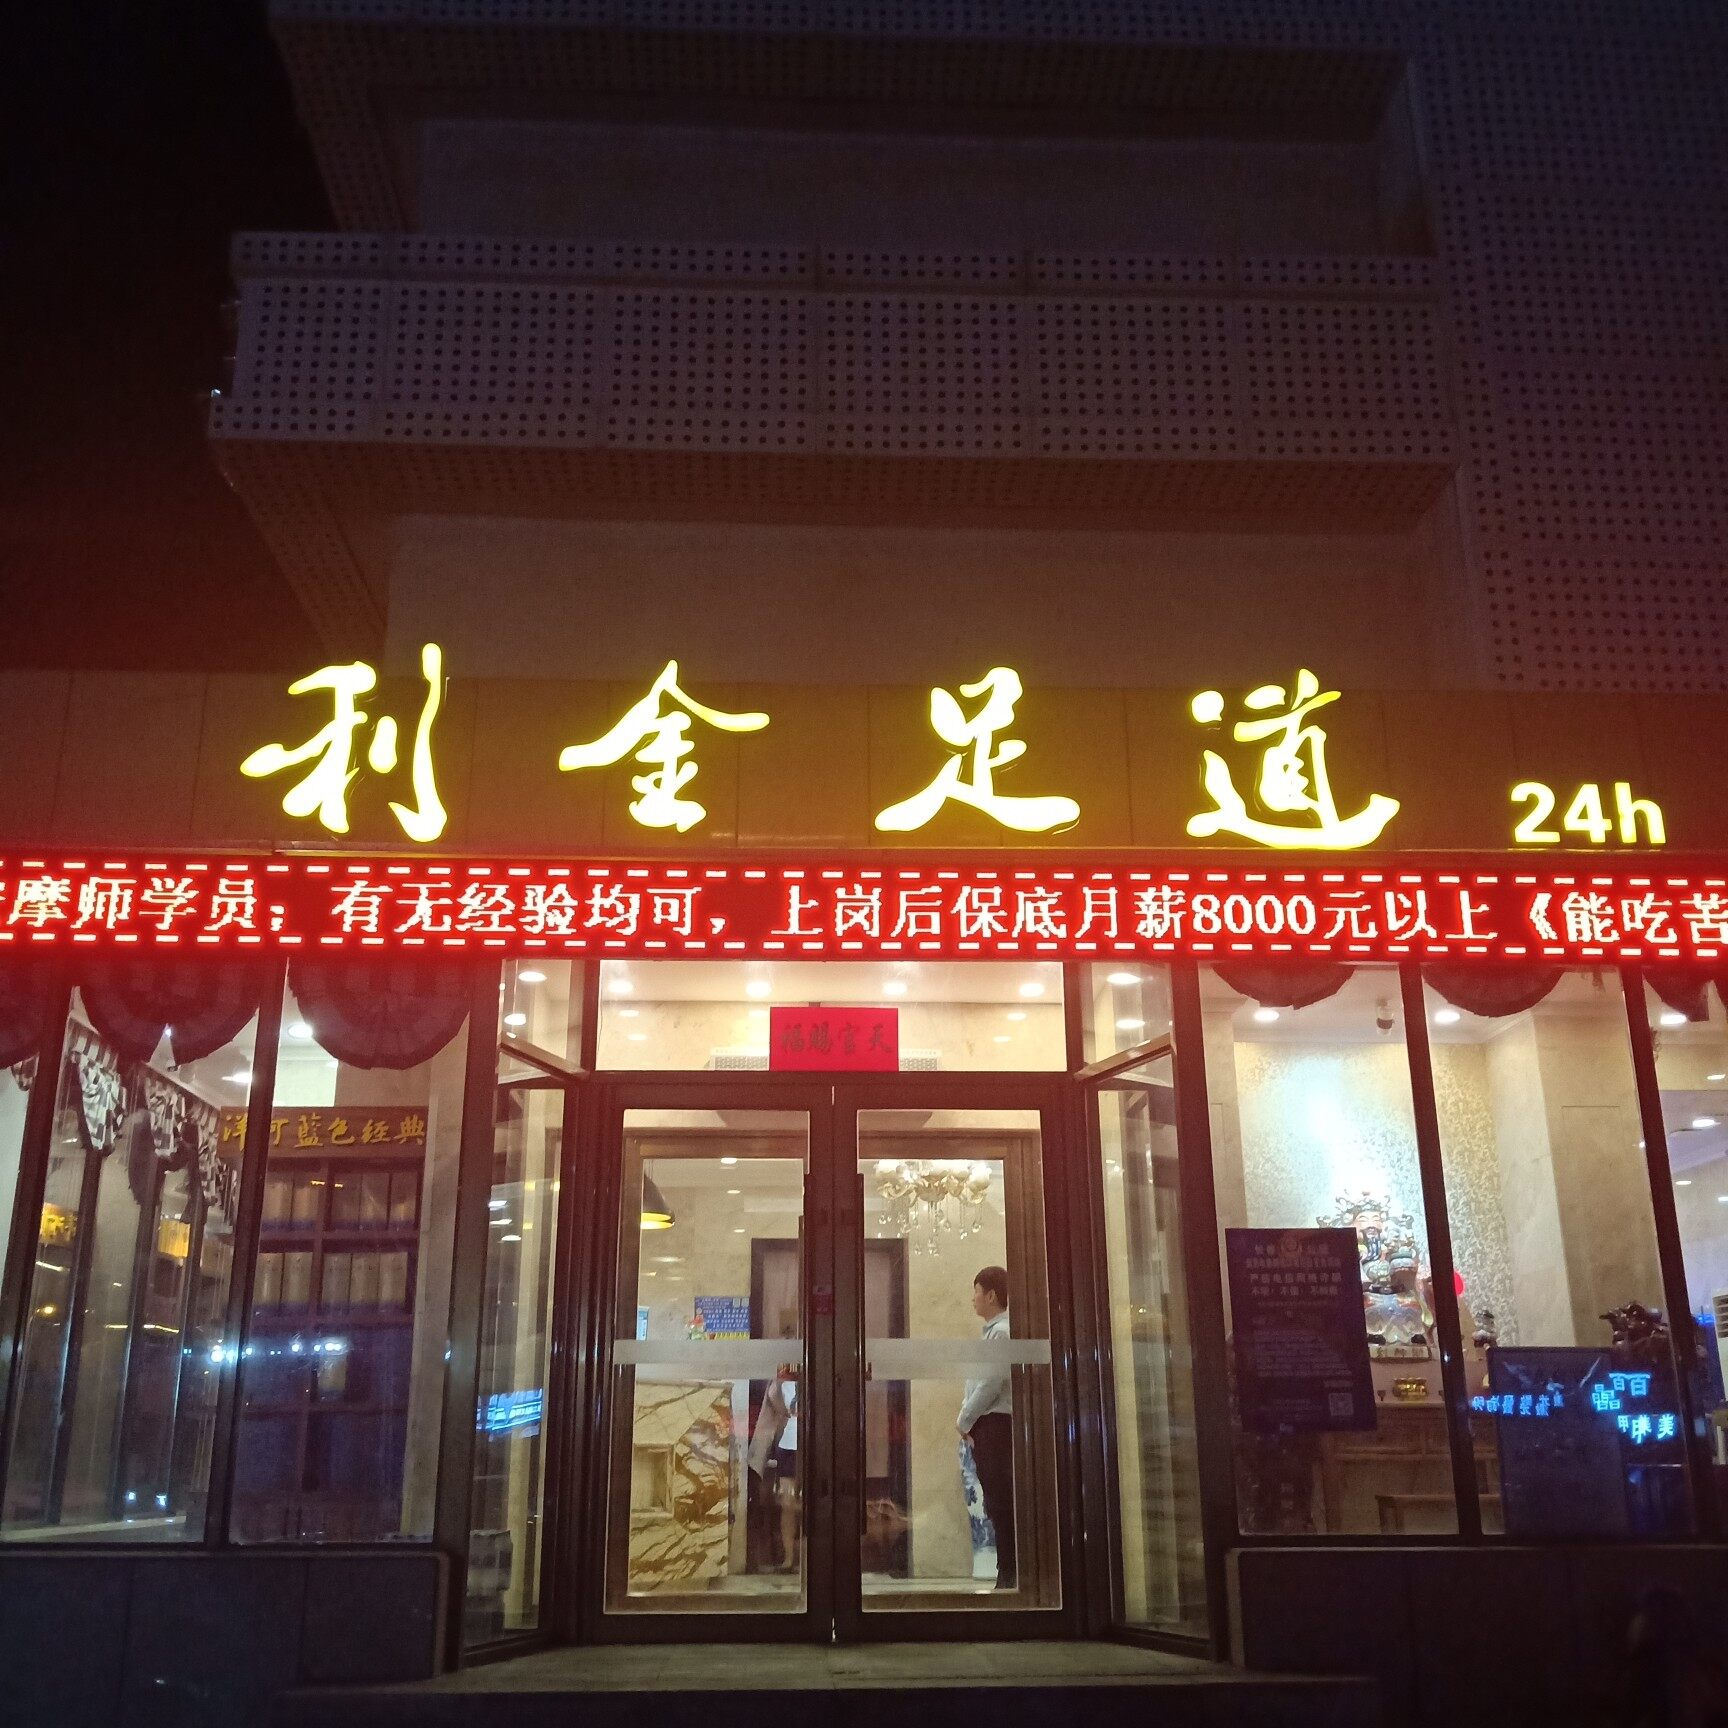 汽车经济技术开发区利金足道飞跃路店logo